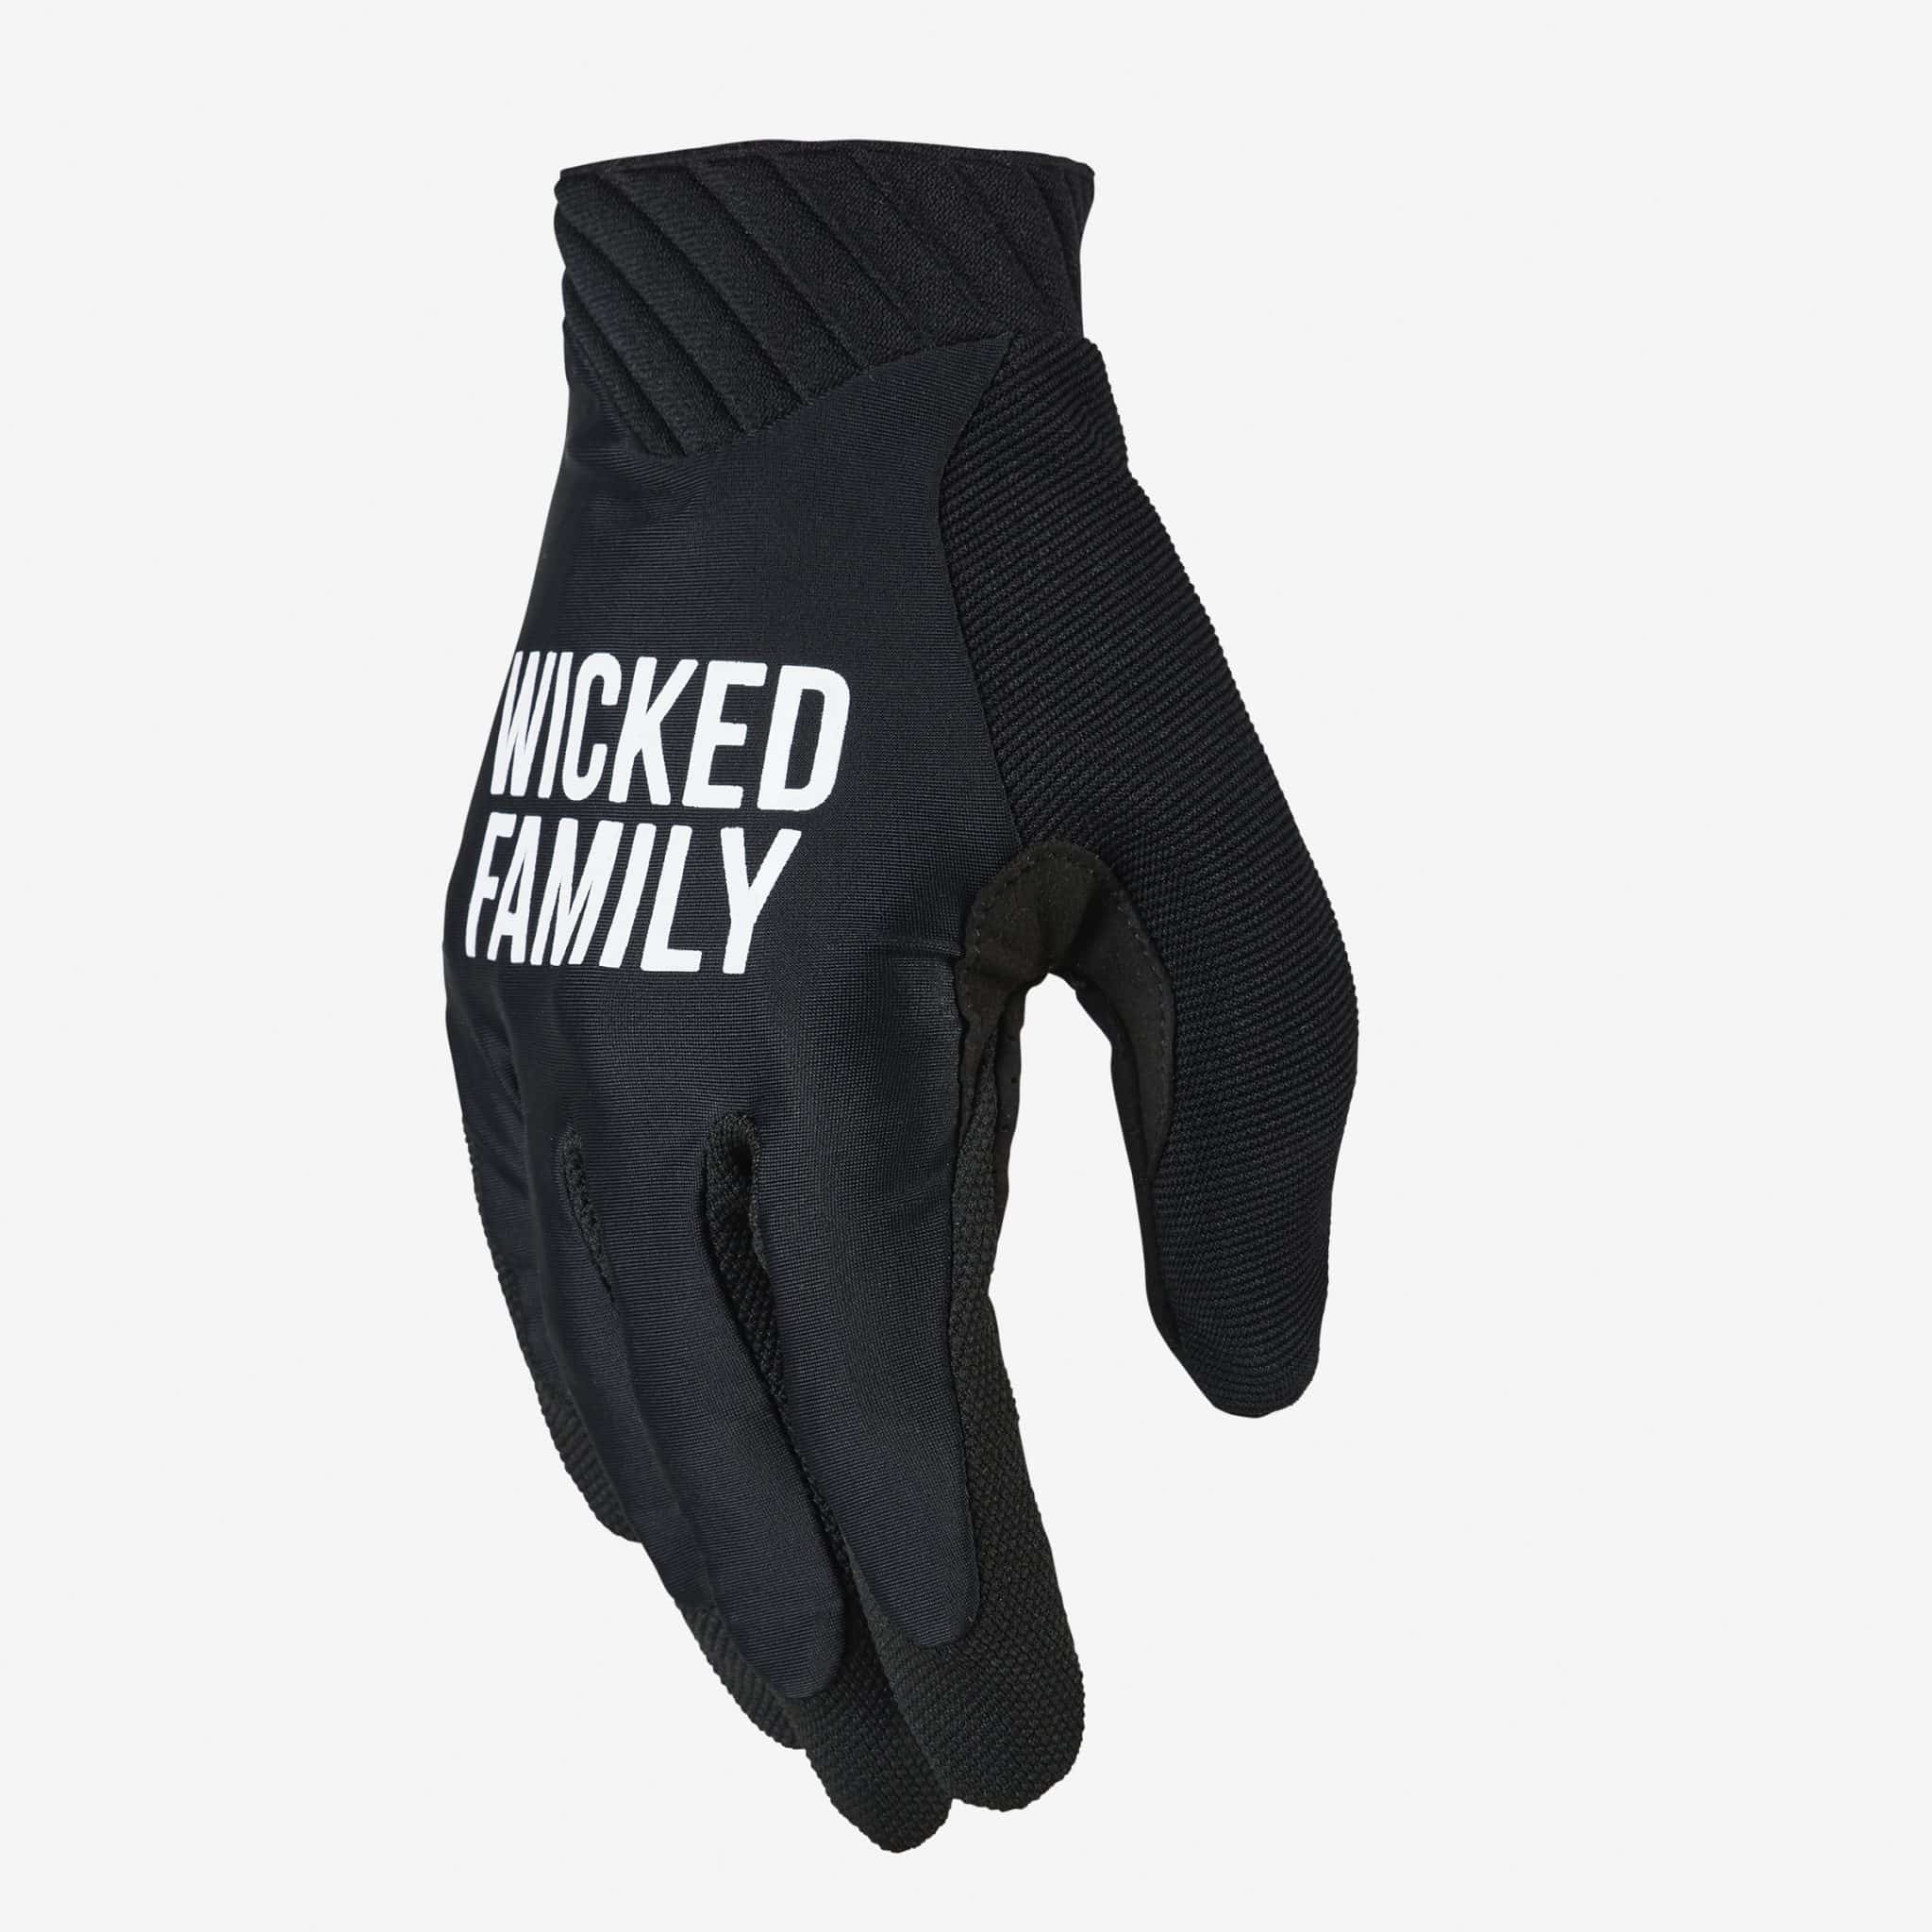 Motocross gloves & Dirt Wicked Family - bike - gloves gear MX